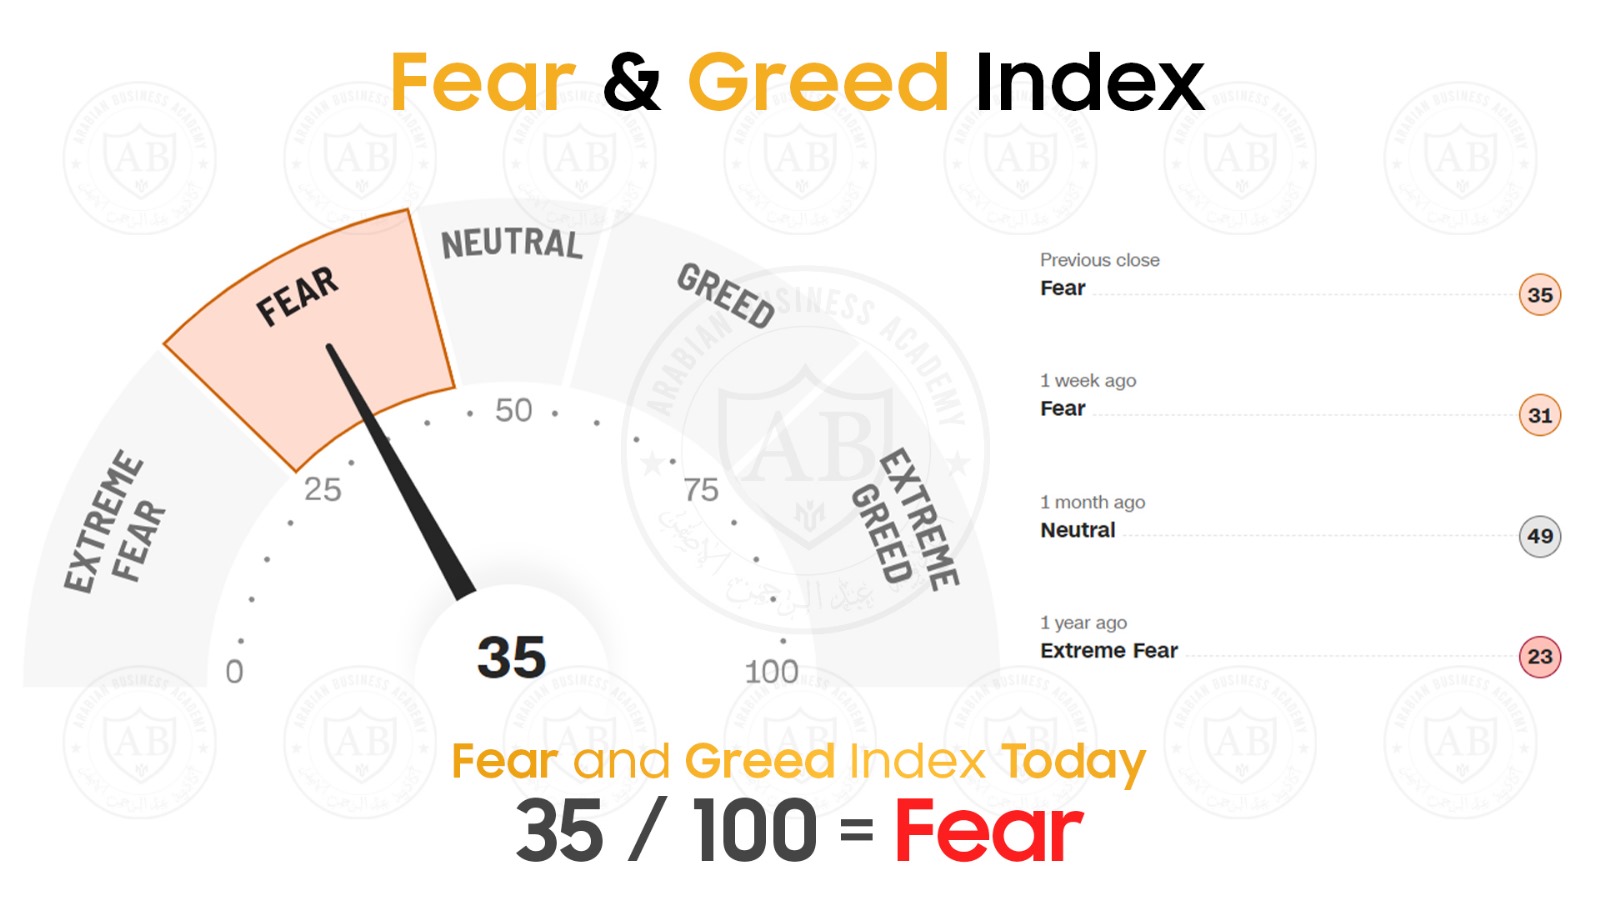 مؤشر  Fear and Greed  في أسواق الأسهم يشير  الى 35/100  لجلسة اليوم